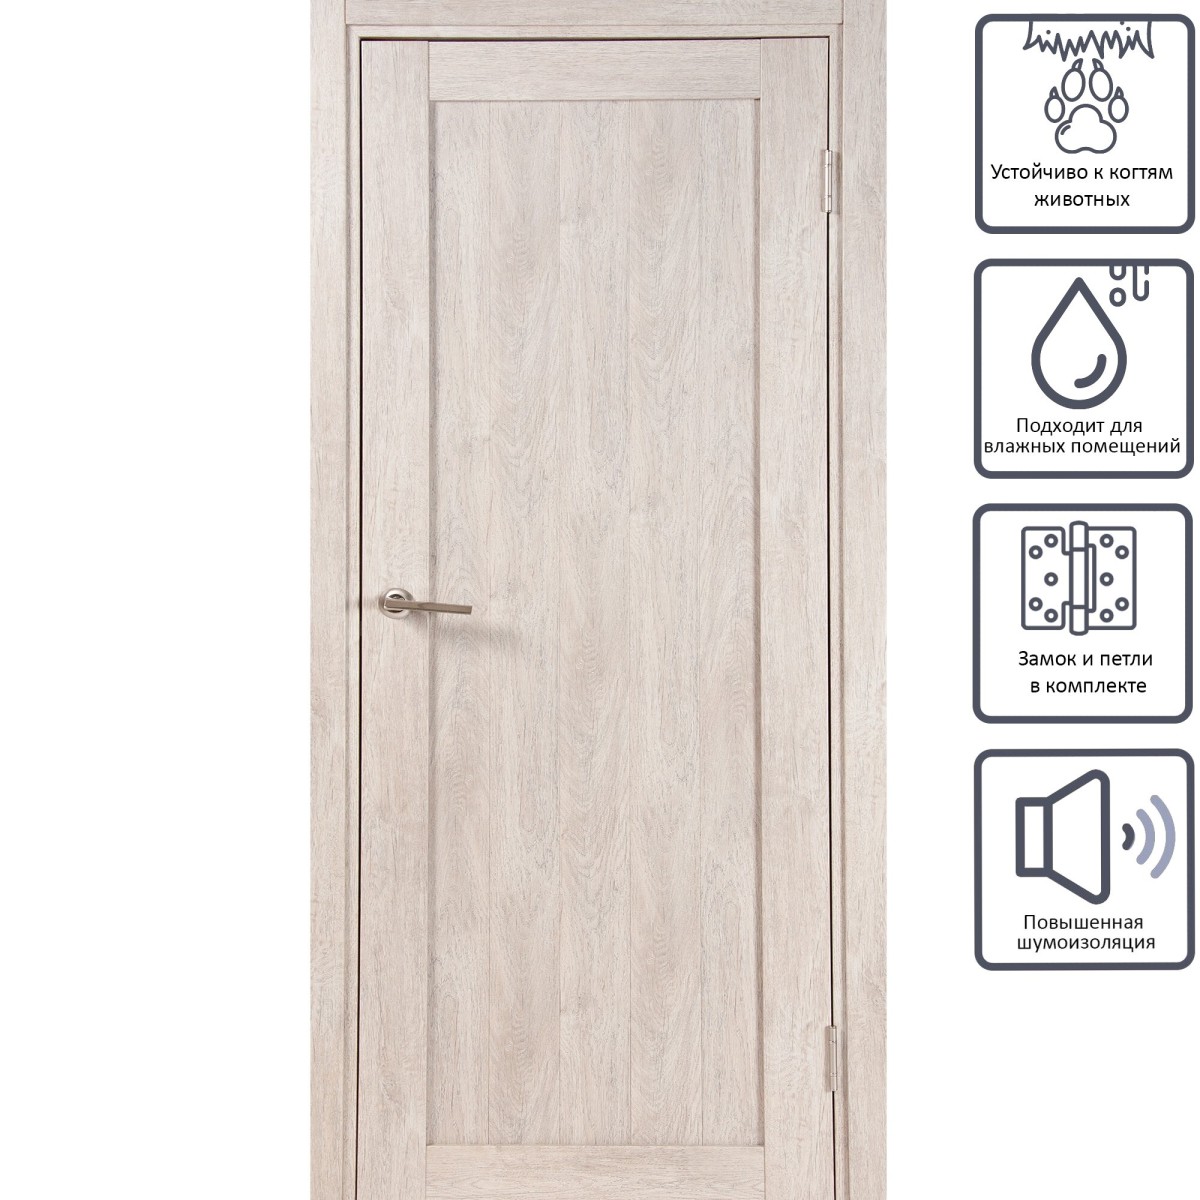 Дверь межкомнатная глухая Кантри 70x200 см, ПВХ, цвет дуб эссо, с фурнитурой